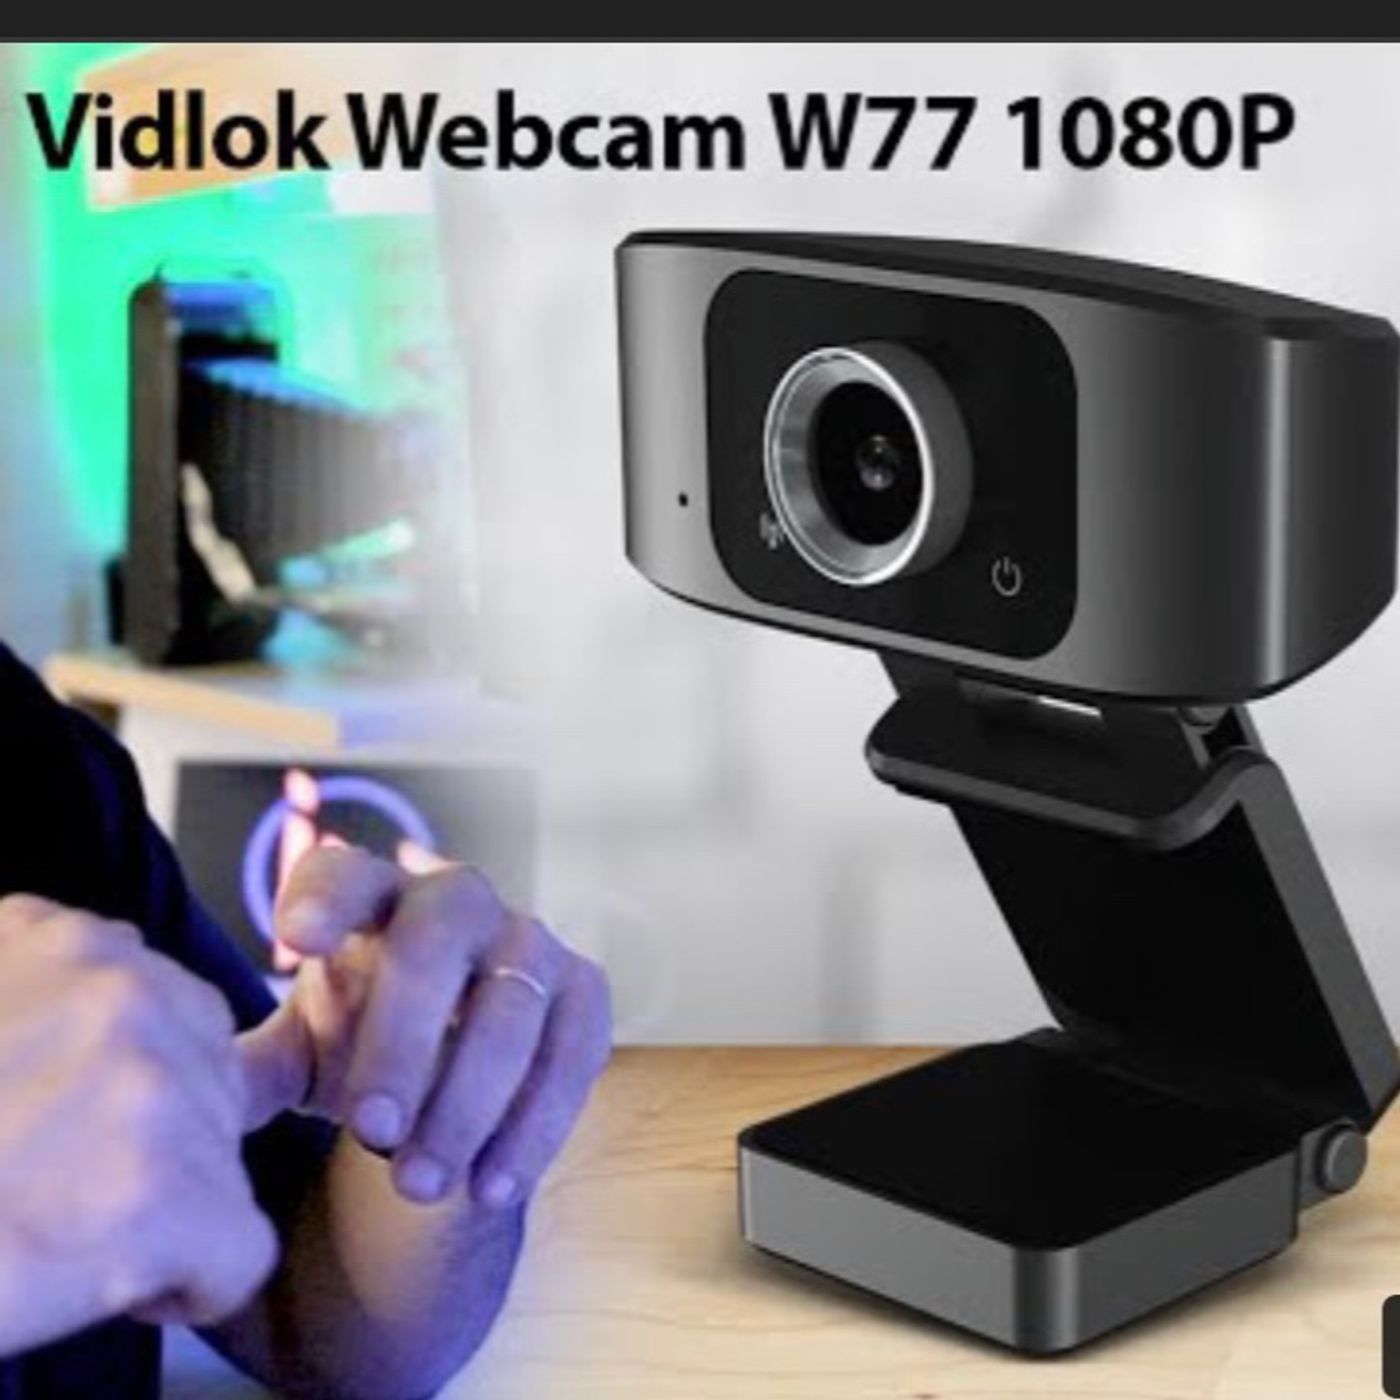 EPA!! que bueno para el precio  “Vidlok Webcam W77 1080P”